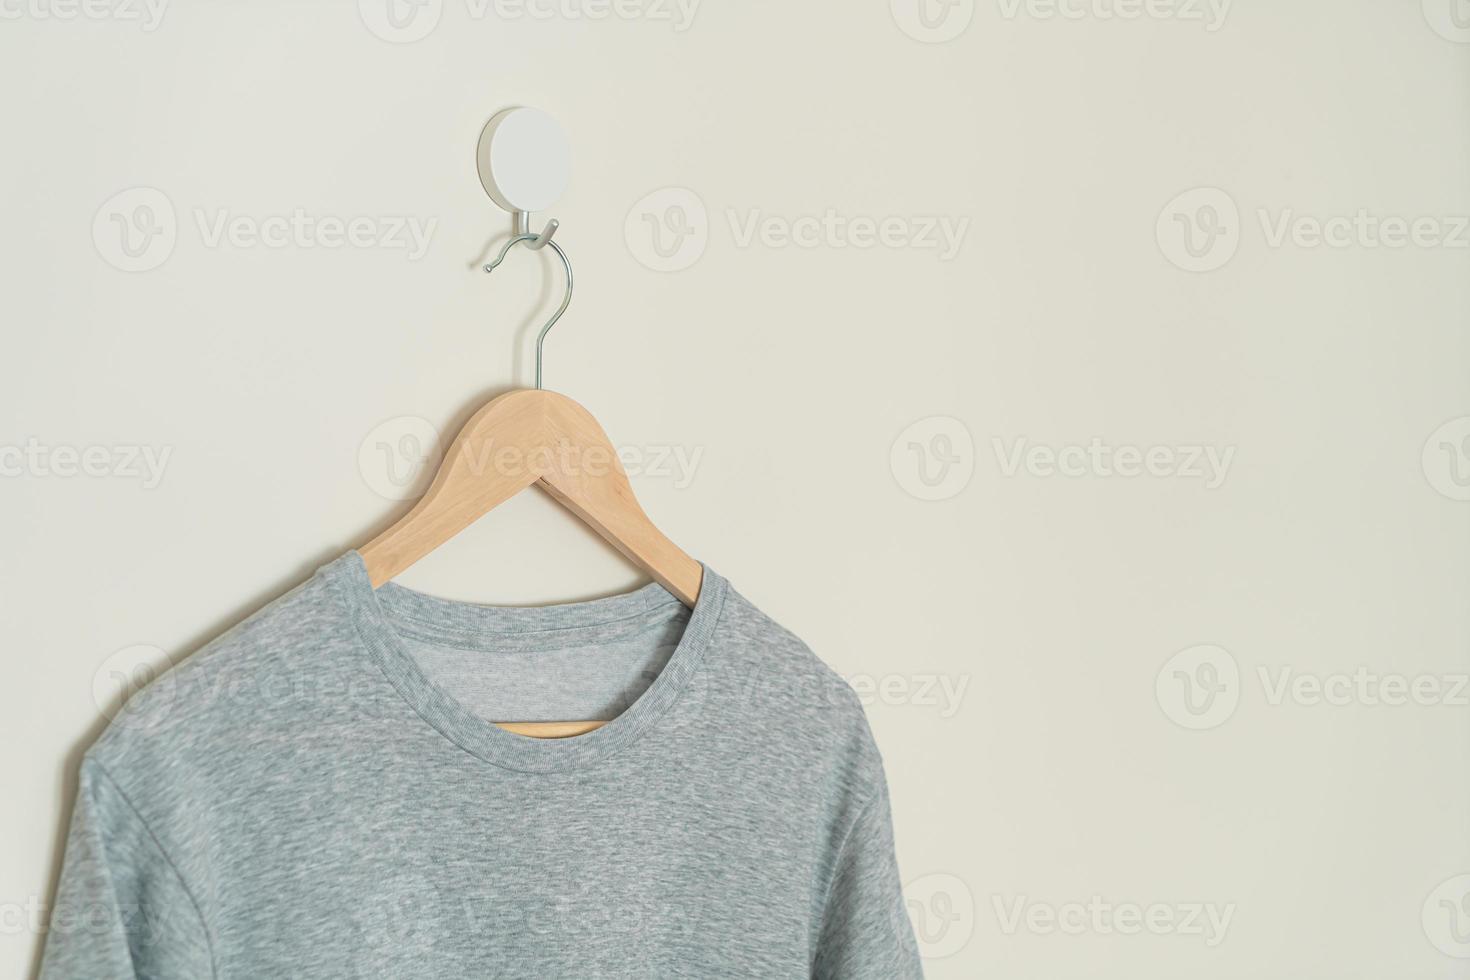 t-shirt suspendu avec cintre en bois photo